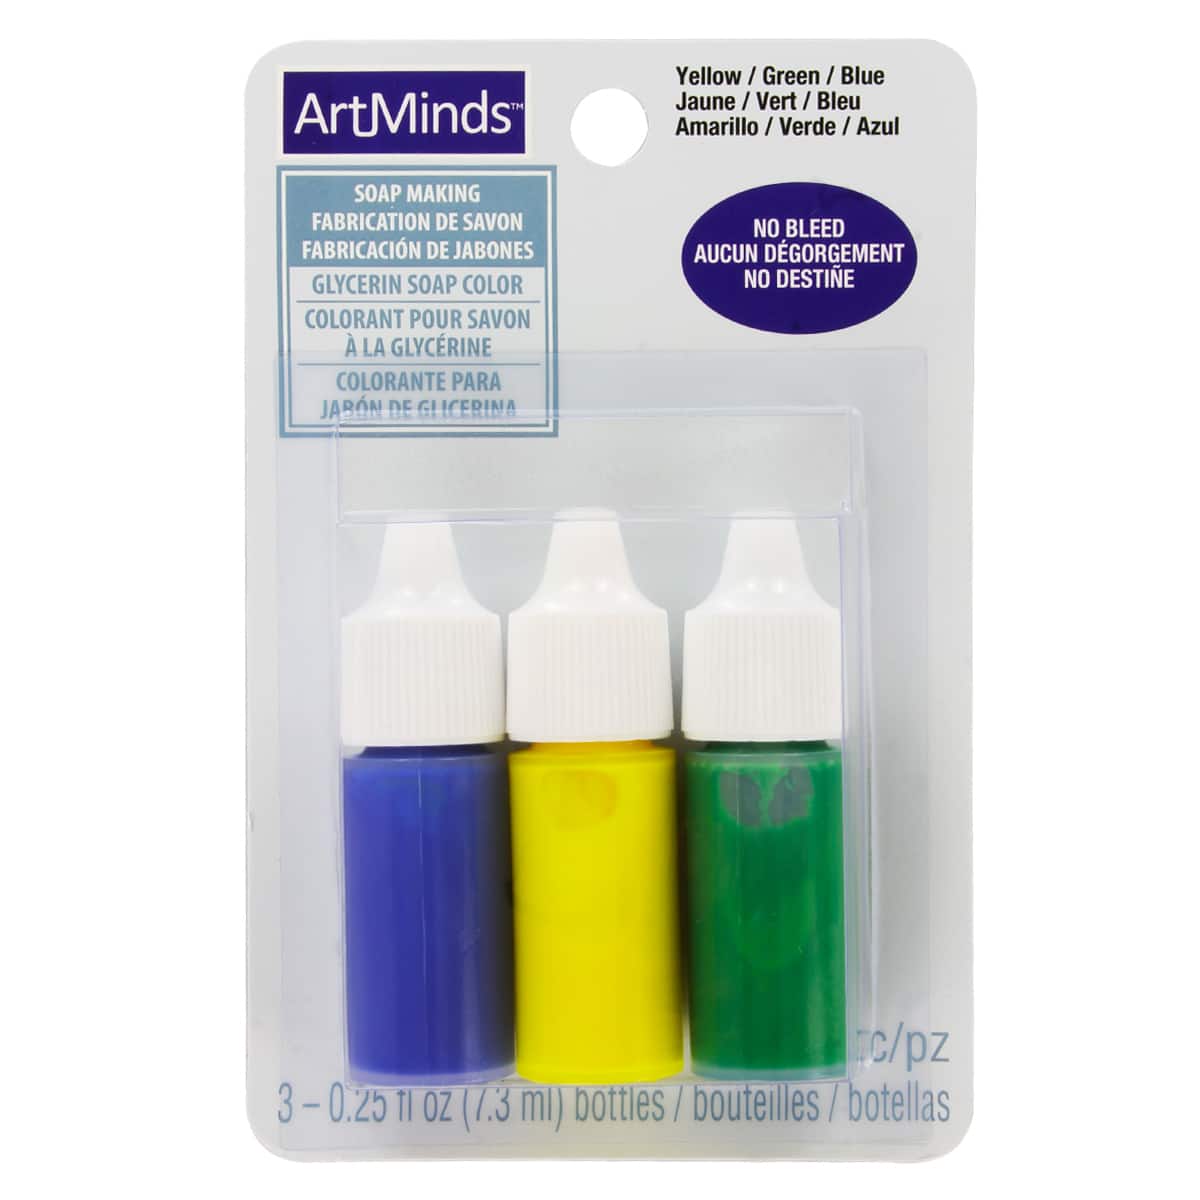 Colorant pour savon - couleurs assorties - 5 x 30 g - Colorant savon -  Creavea